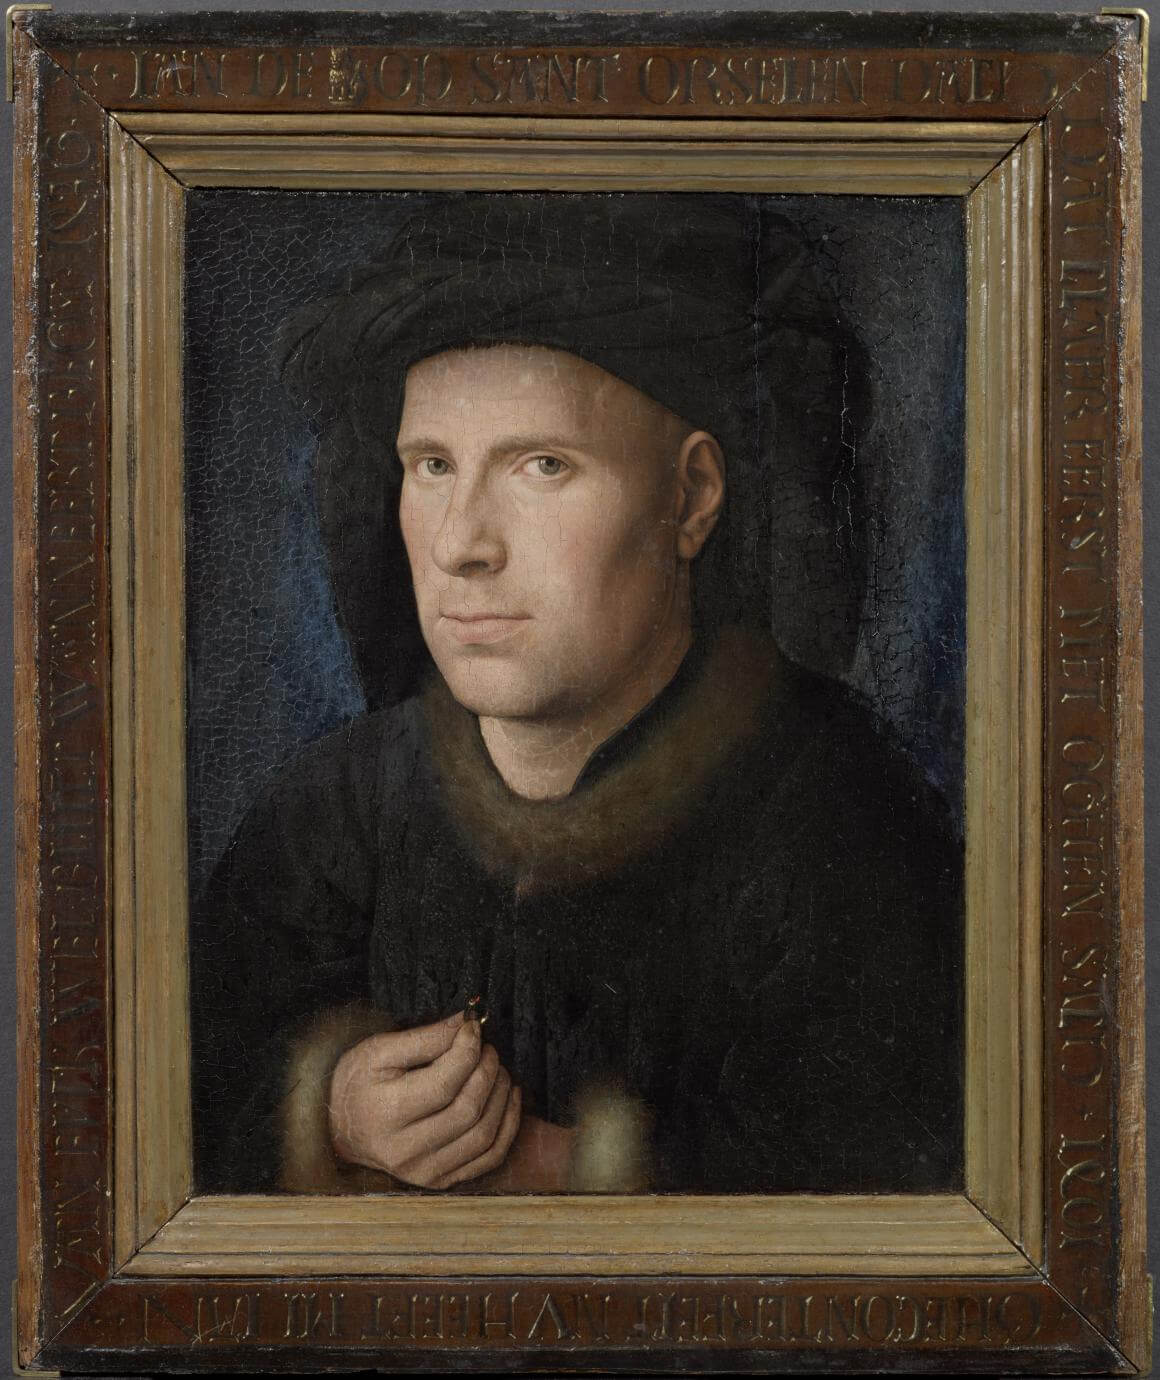 Jan van Eyck, Portrait of Jan de Leeuw, 1436, Kunsthistorisches Museum Wenen, Gemäldegalerie